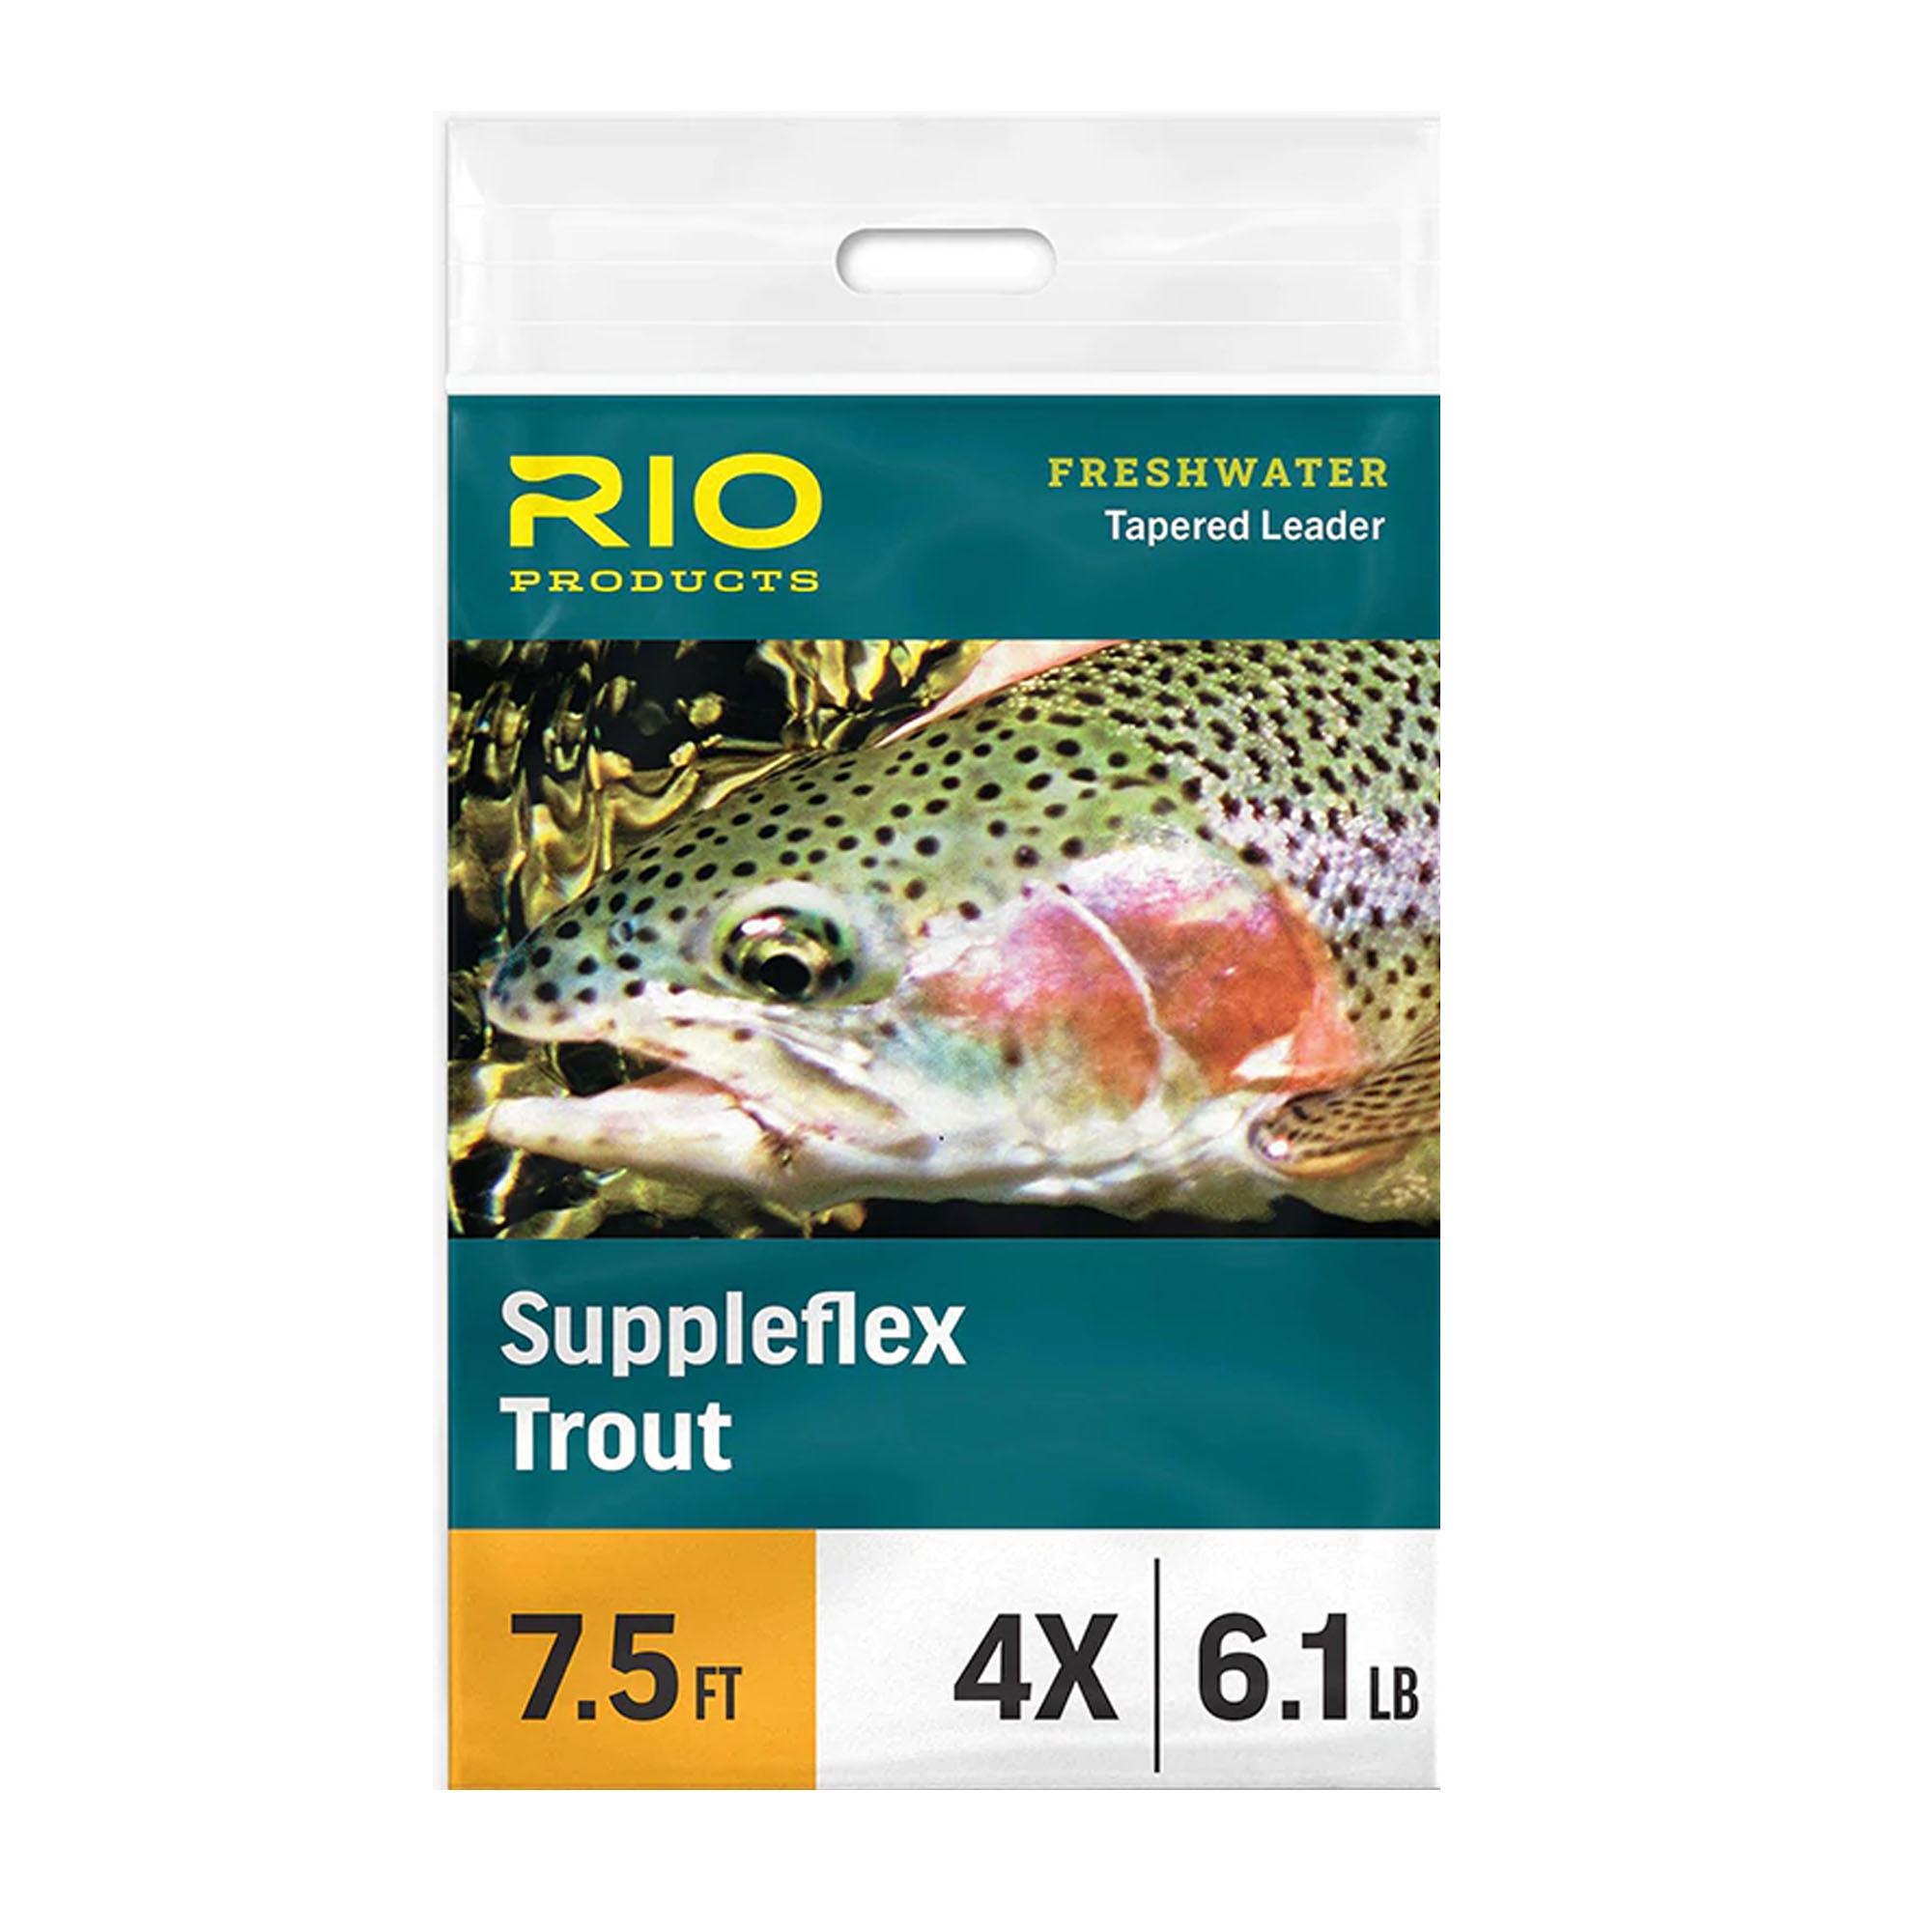 RIO Suppleflex Trout Leader – Guide Flyfishing